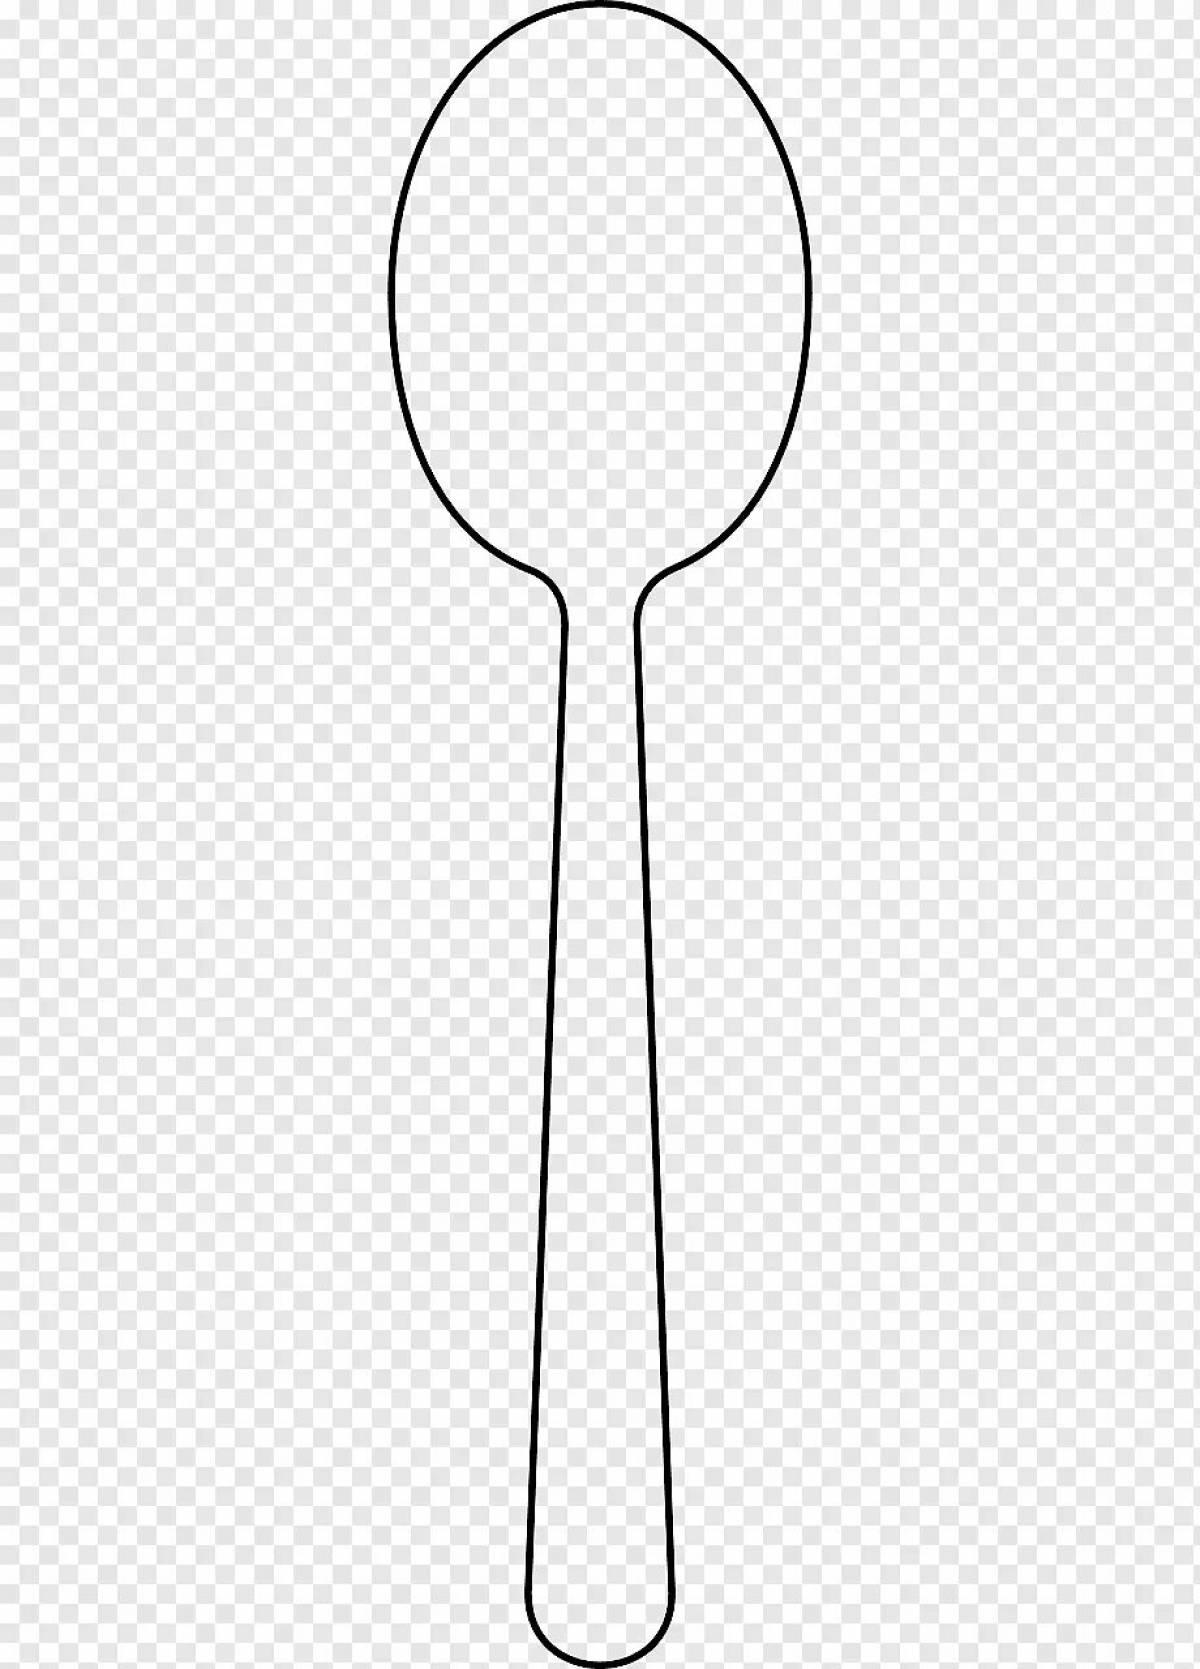 Children's wooden spoon #19